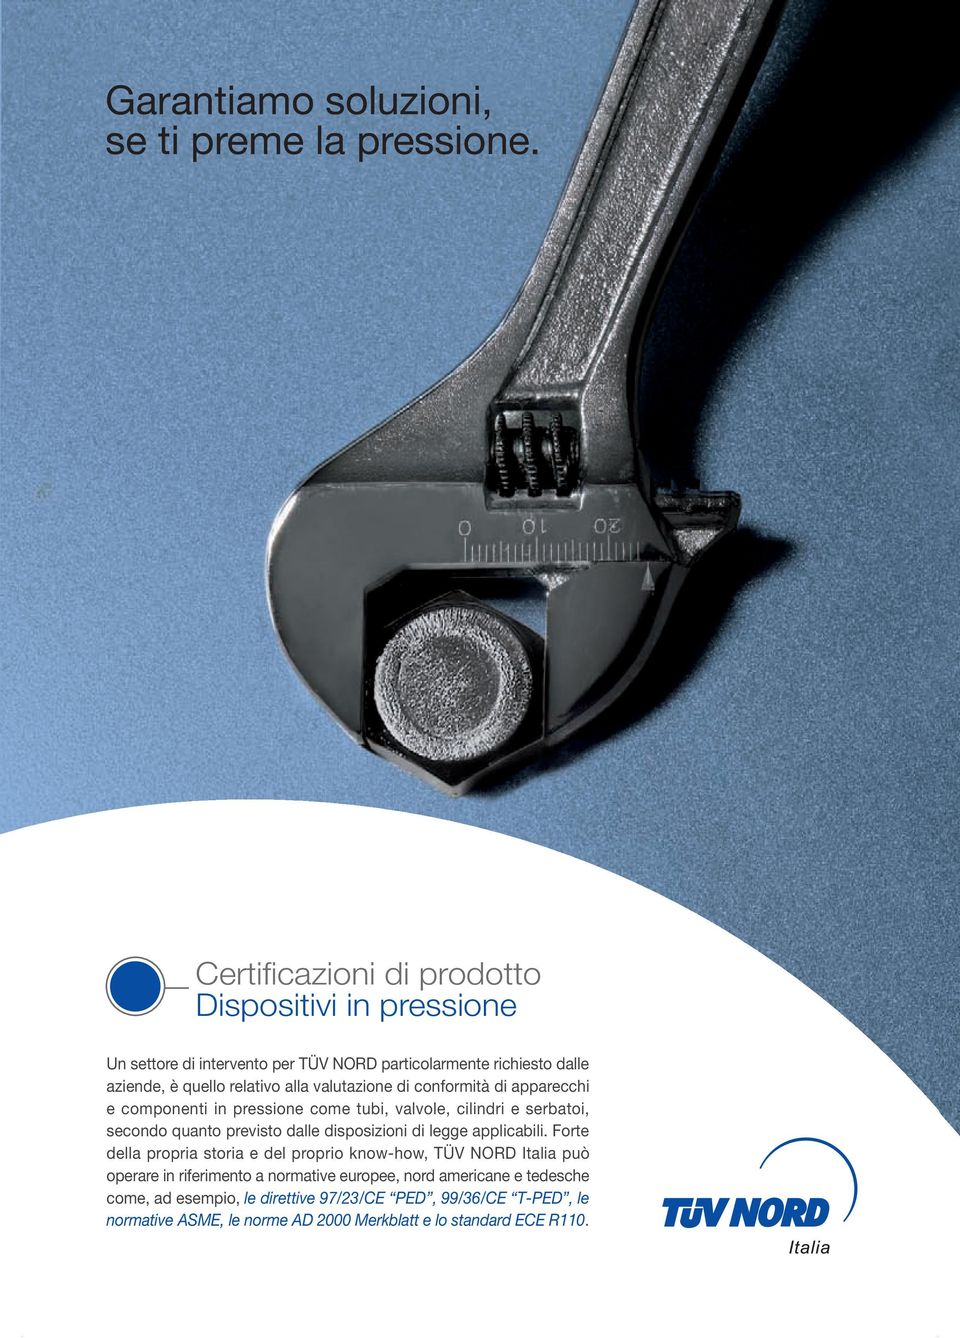 valutazione di conformità di apparecchi e componenti in pressione come tubi, valvole, cilindri e serbatoi, secondo quanto previsto dalle disposizioni di legge